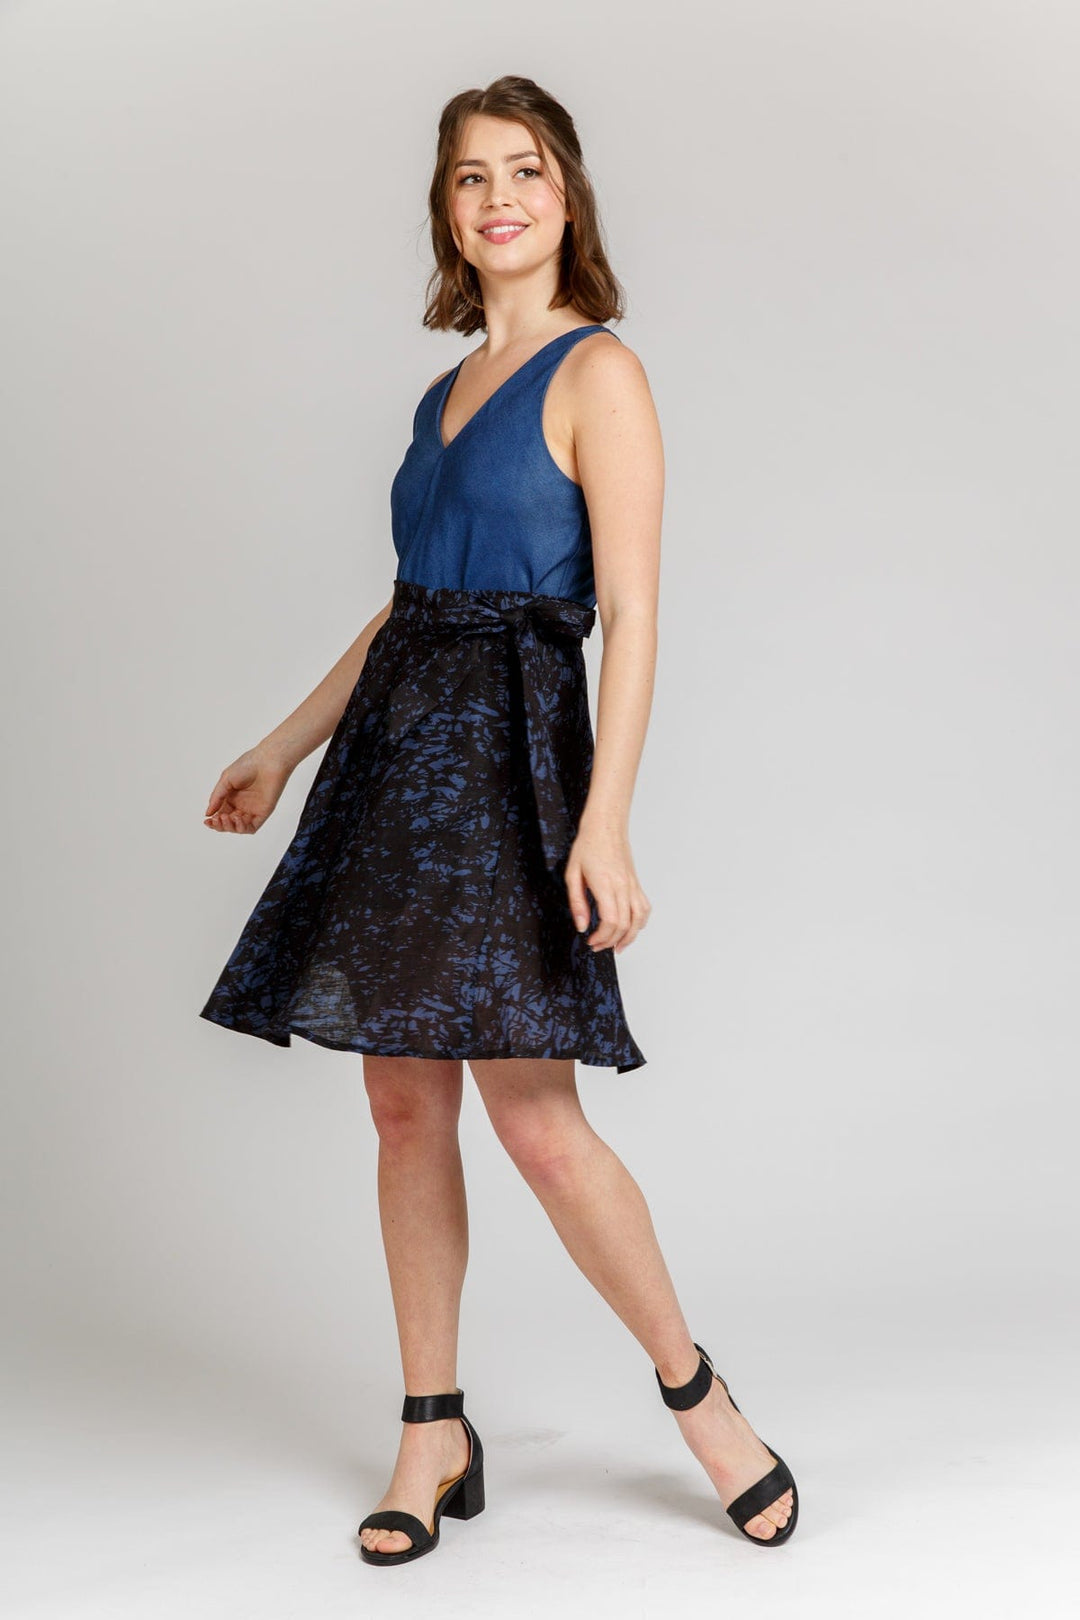 Wattle Skirt - Sizes 0-20 - Megan Nielsen